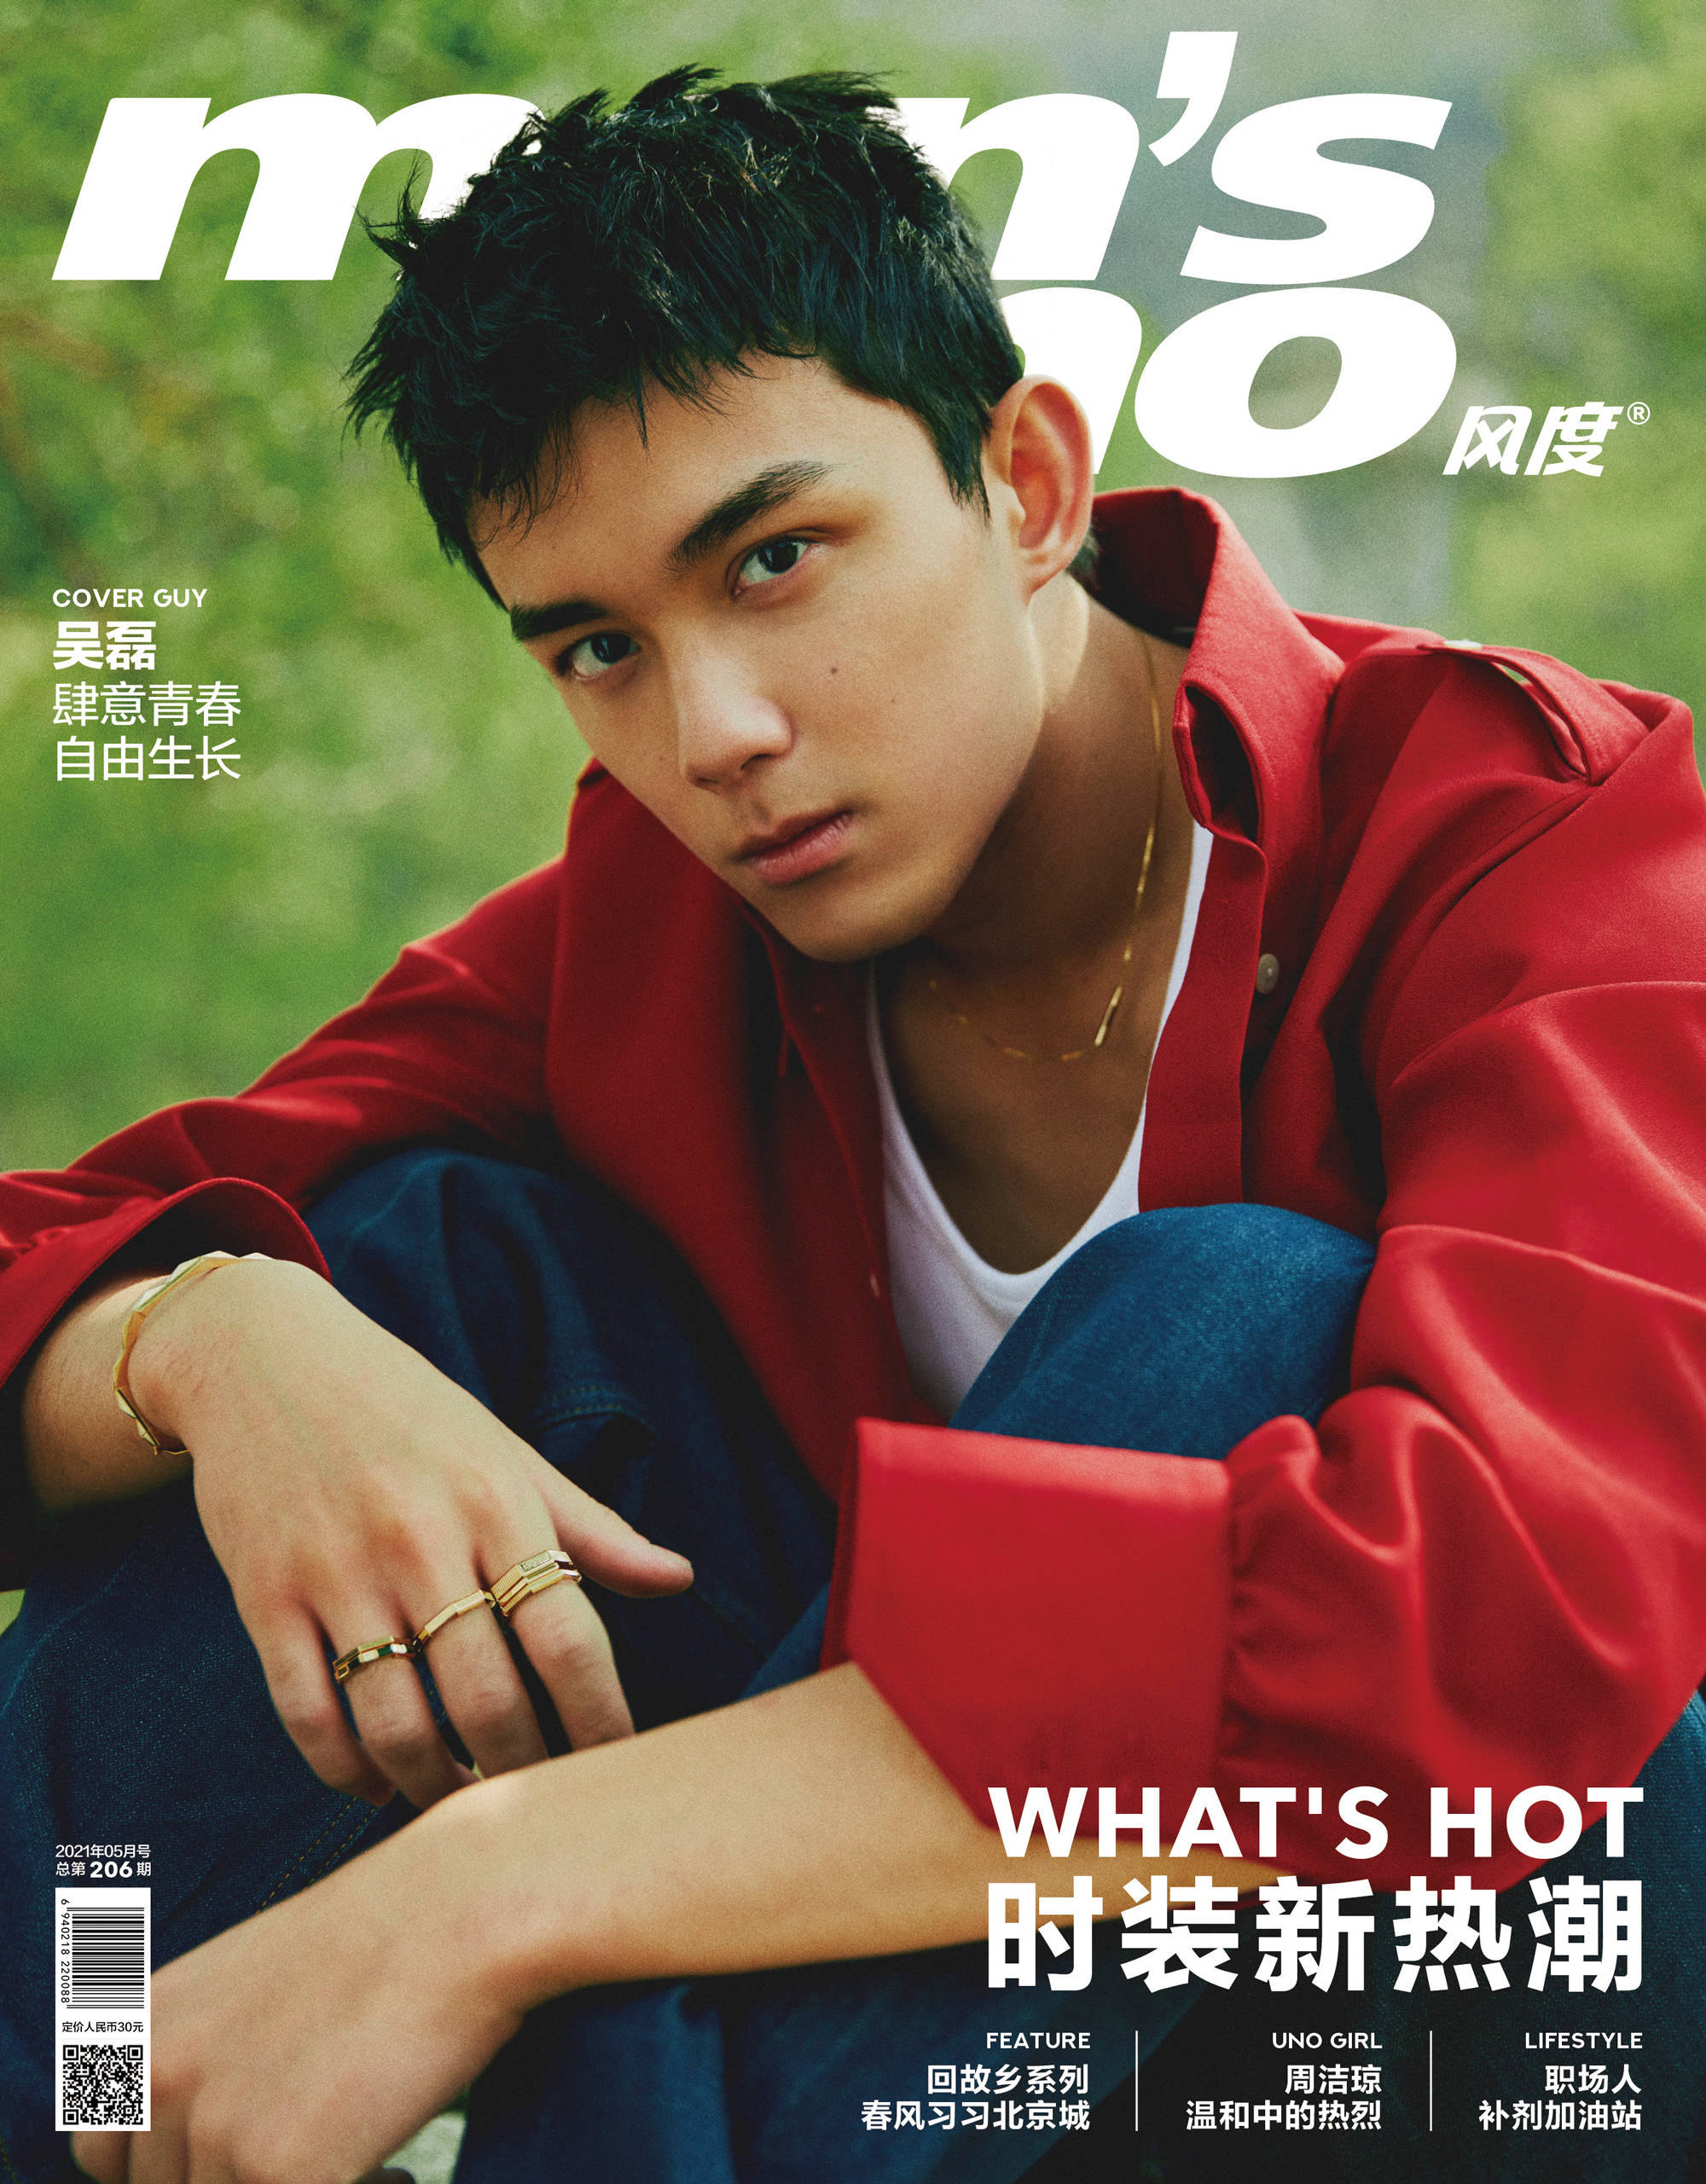 吴磊登杂志五月刊封面 展现热血少年的肆意青春